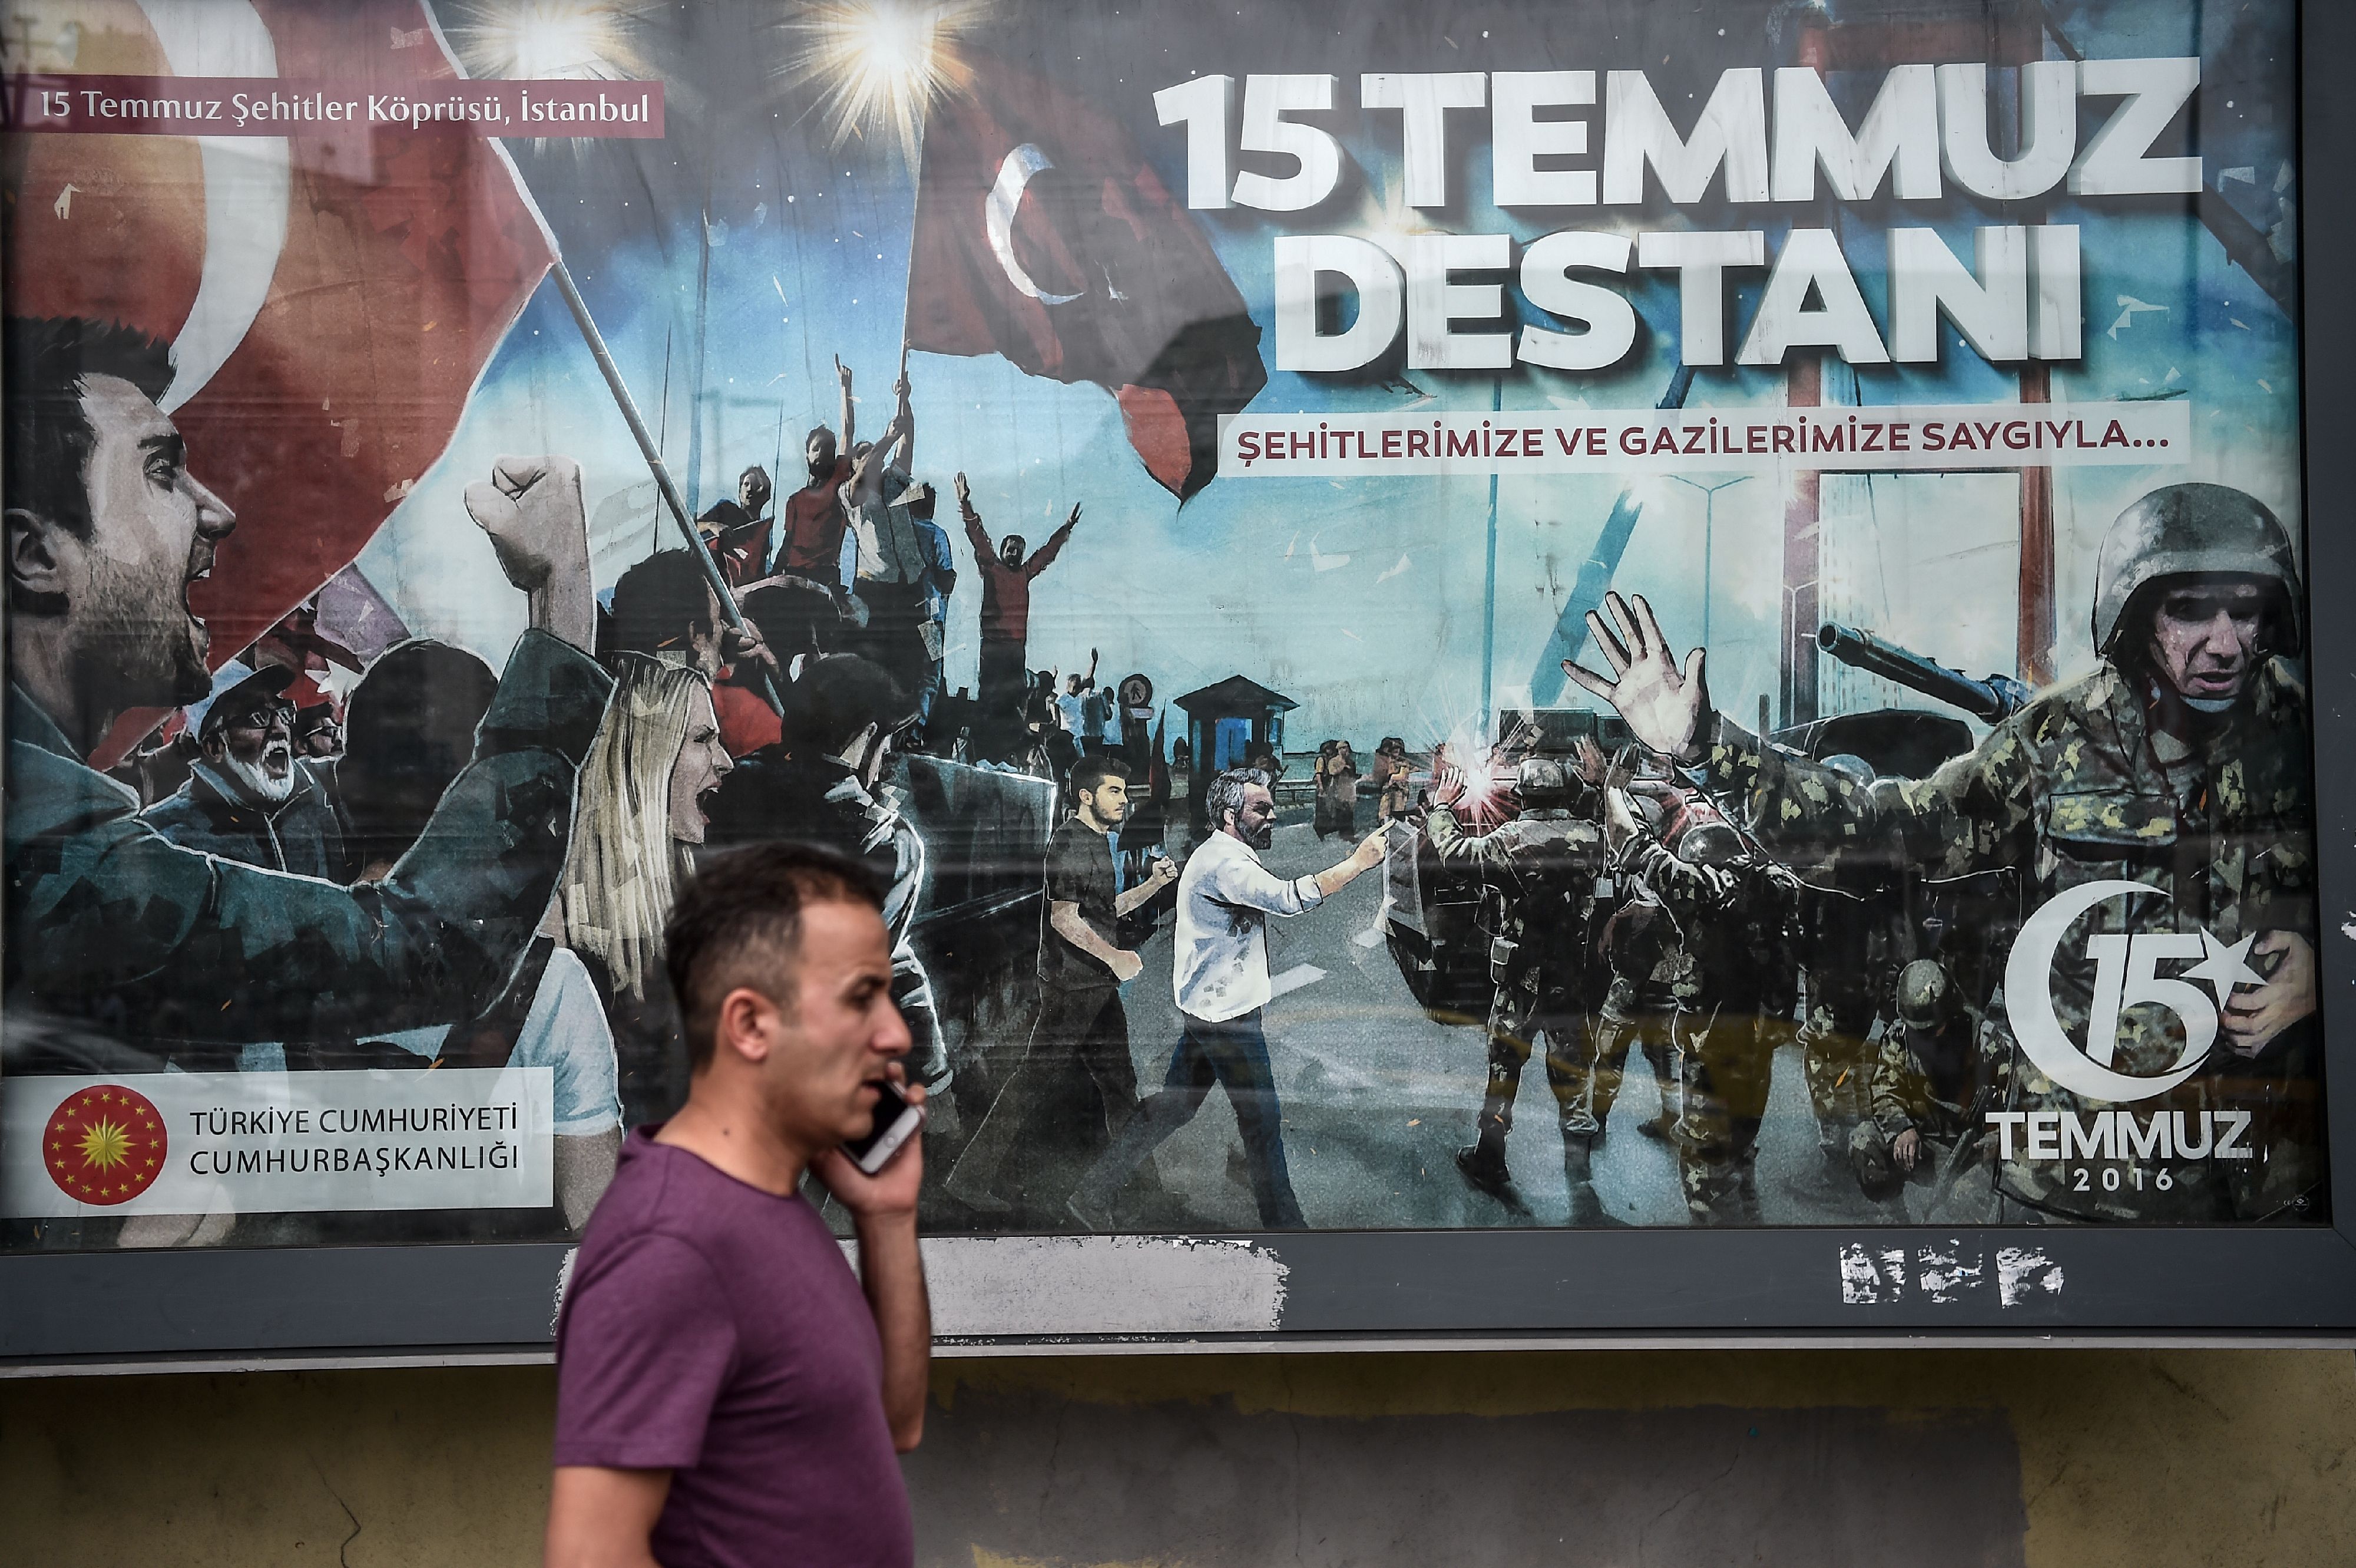 أردوغان يهين الجيش التركى بملصقات مسيئة